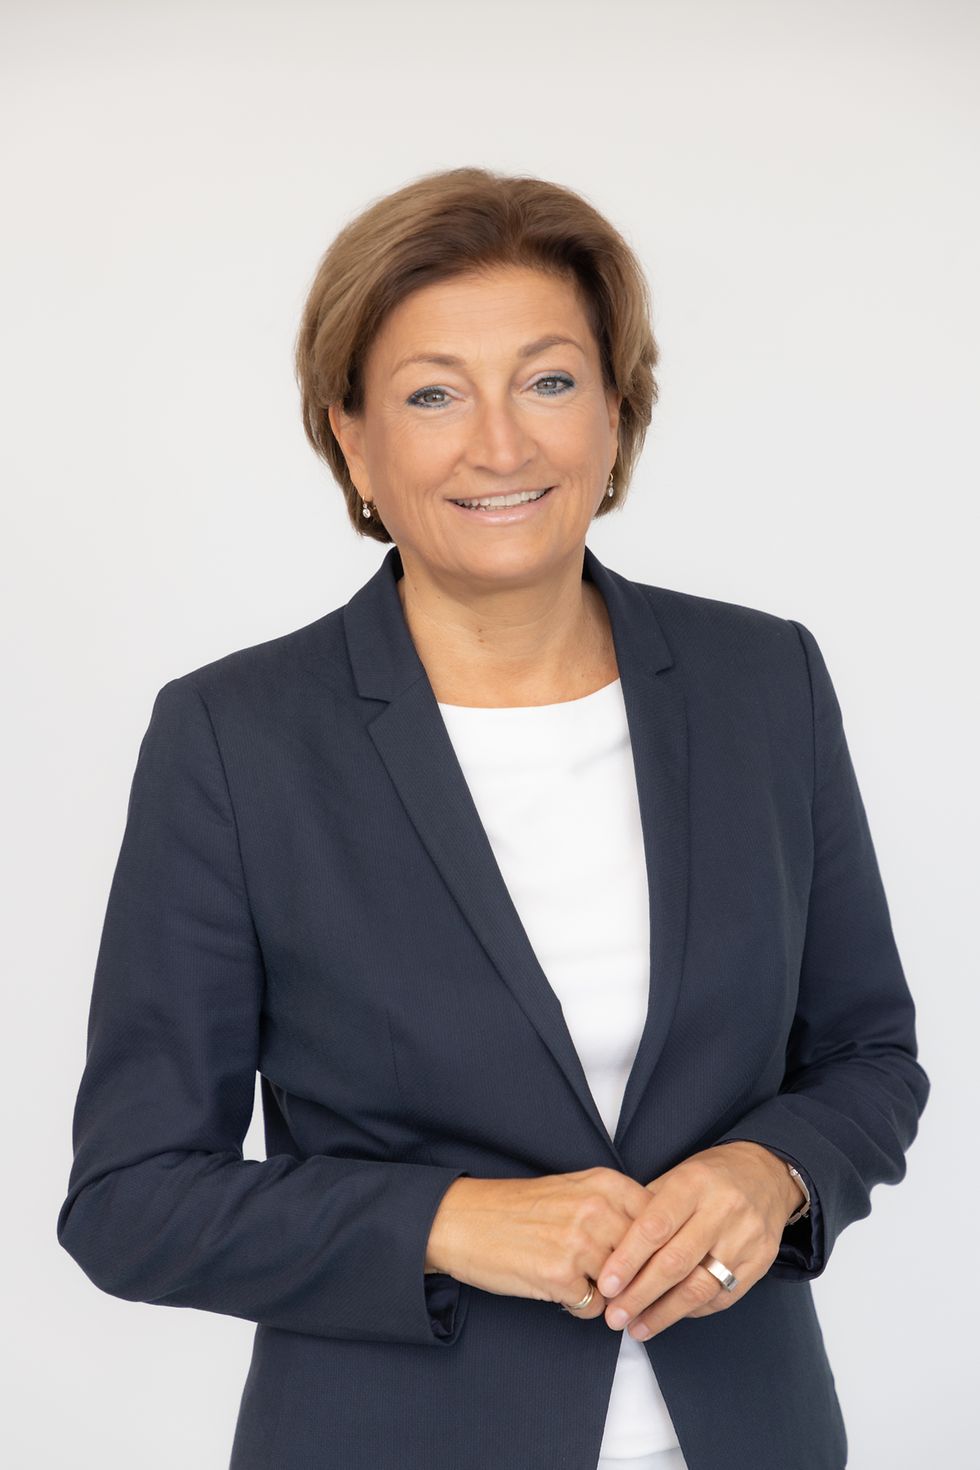 
Mag. Birgit Rechberger-Krammer
Präsidentin von Henkel in Österreich
Mitglied der Geschäftsführung, zuständig für Laundry & Home Care